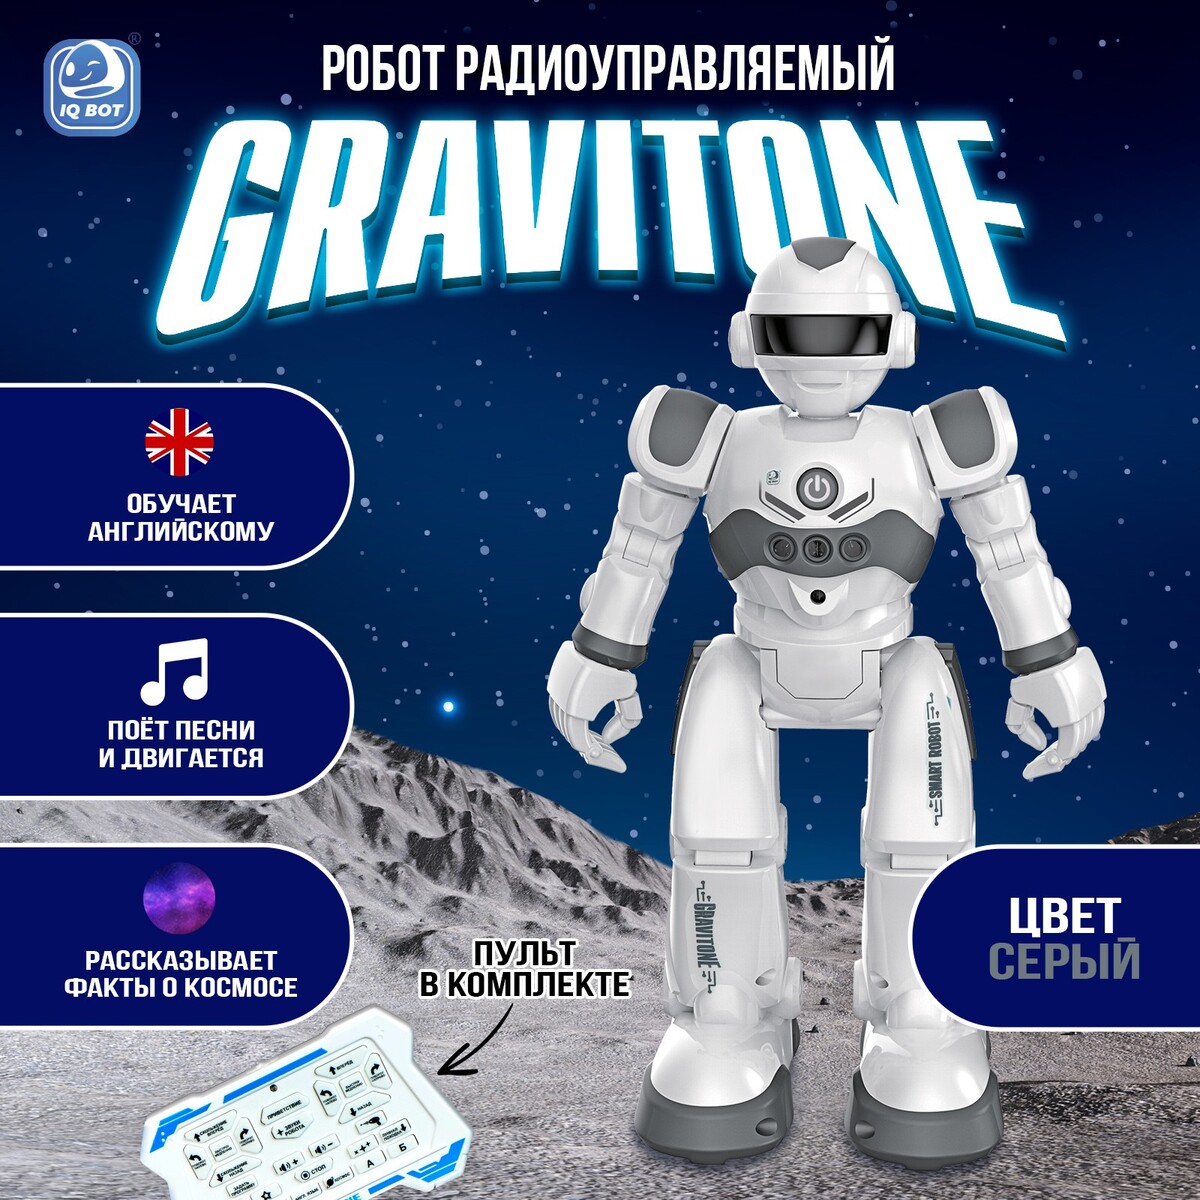 Робот радиоуправляемый iq bot gravitone, русское озвучивание, цвет серый робот радиоуправляемый iq bot gravitone русское озвучивание серый